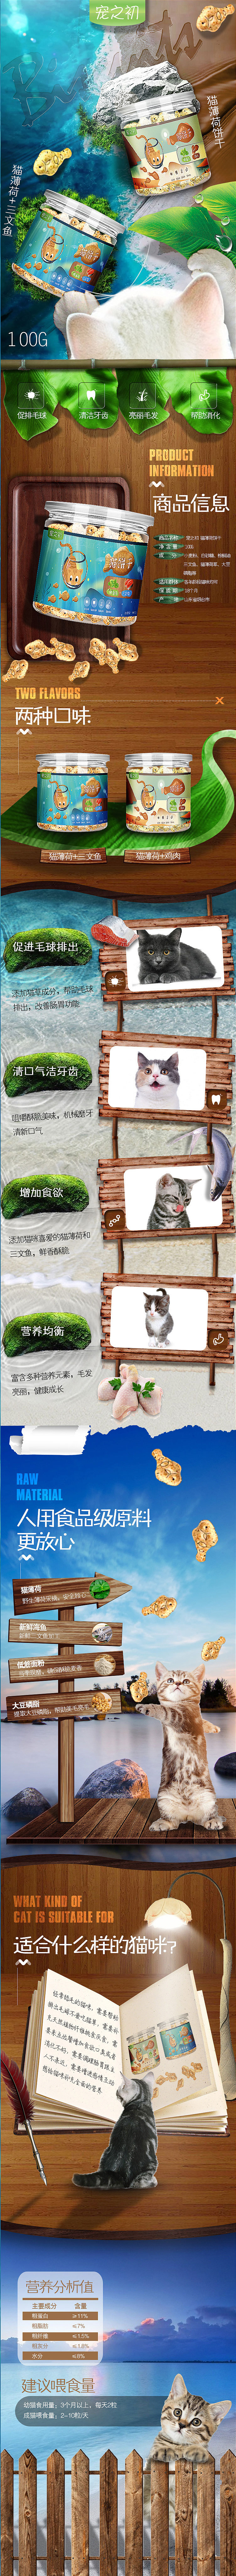 淘宝美工z木子宠物猫饼干详情页作品